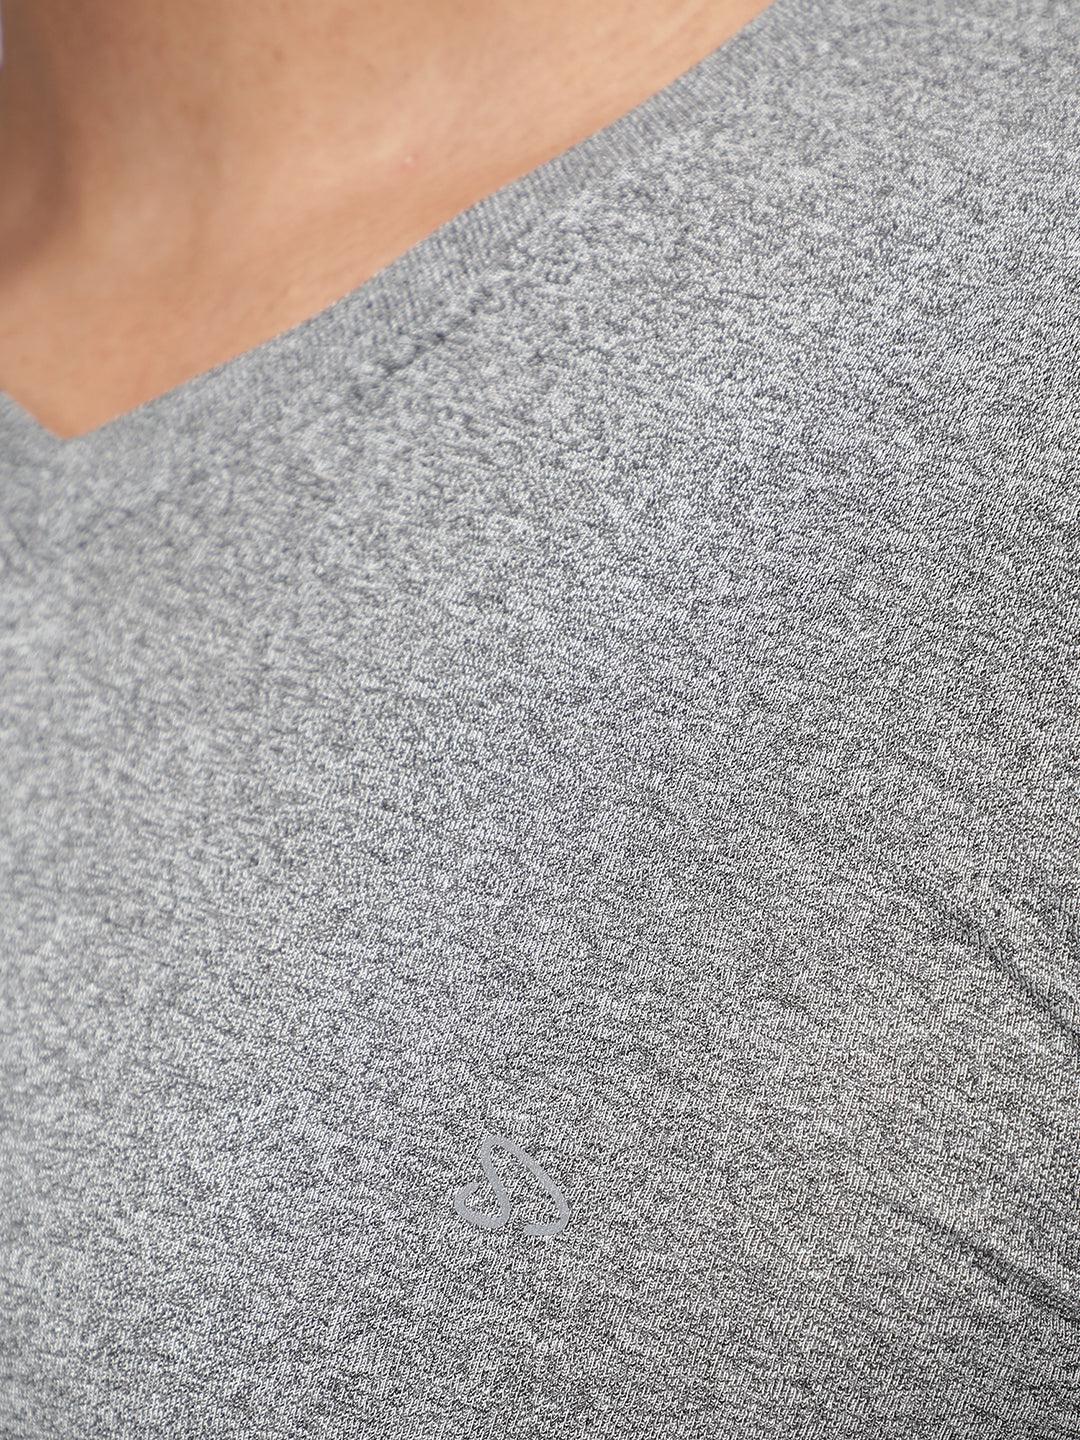 Sporto Men's V Neck Full Sleeve T-Shirt - Grey Melange